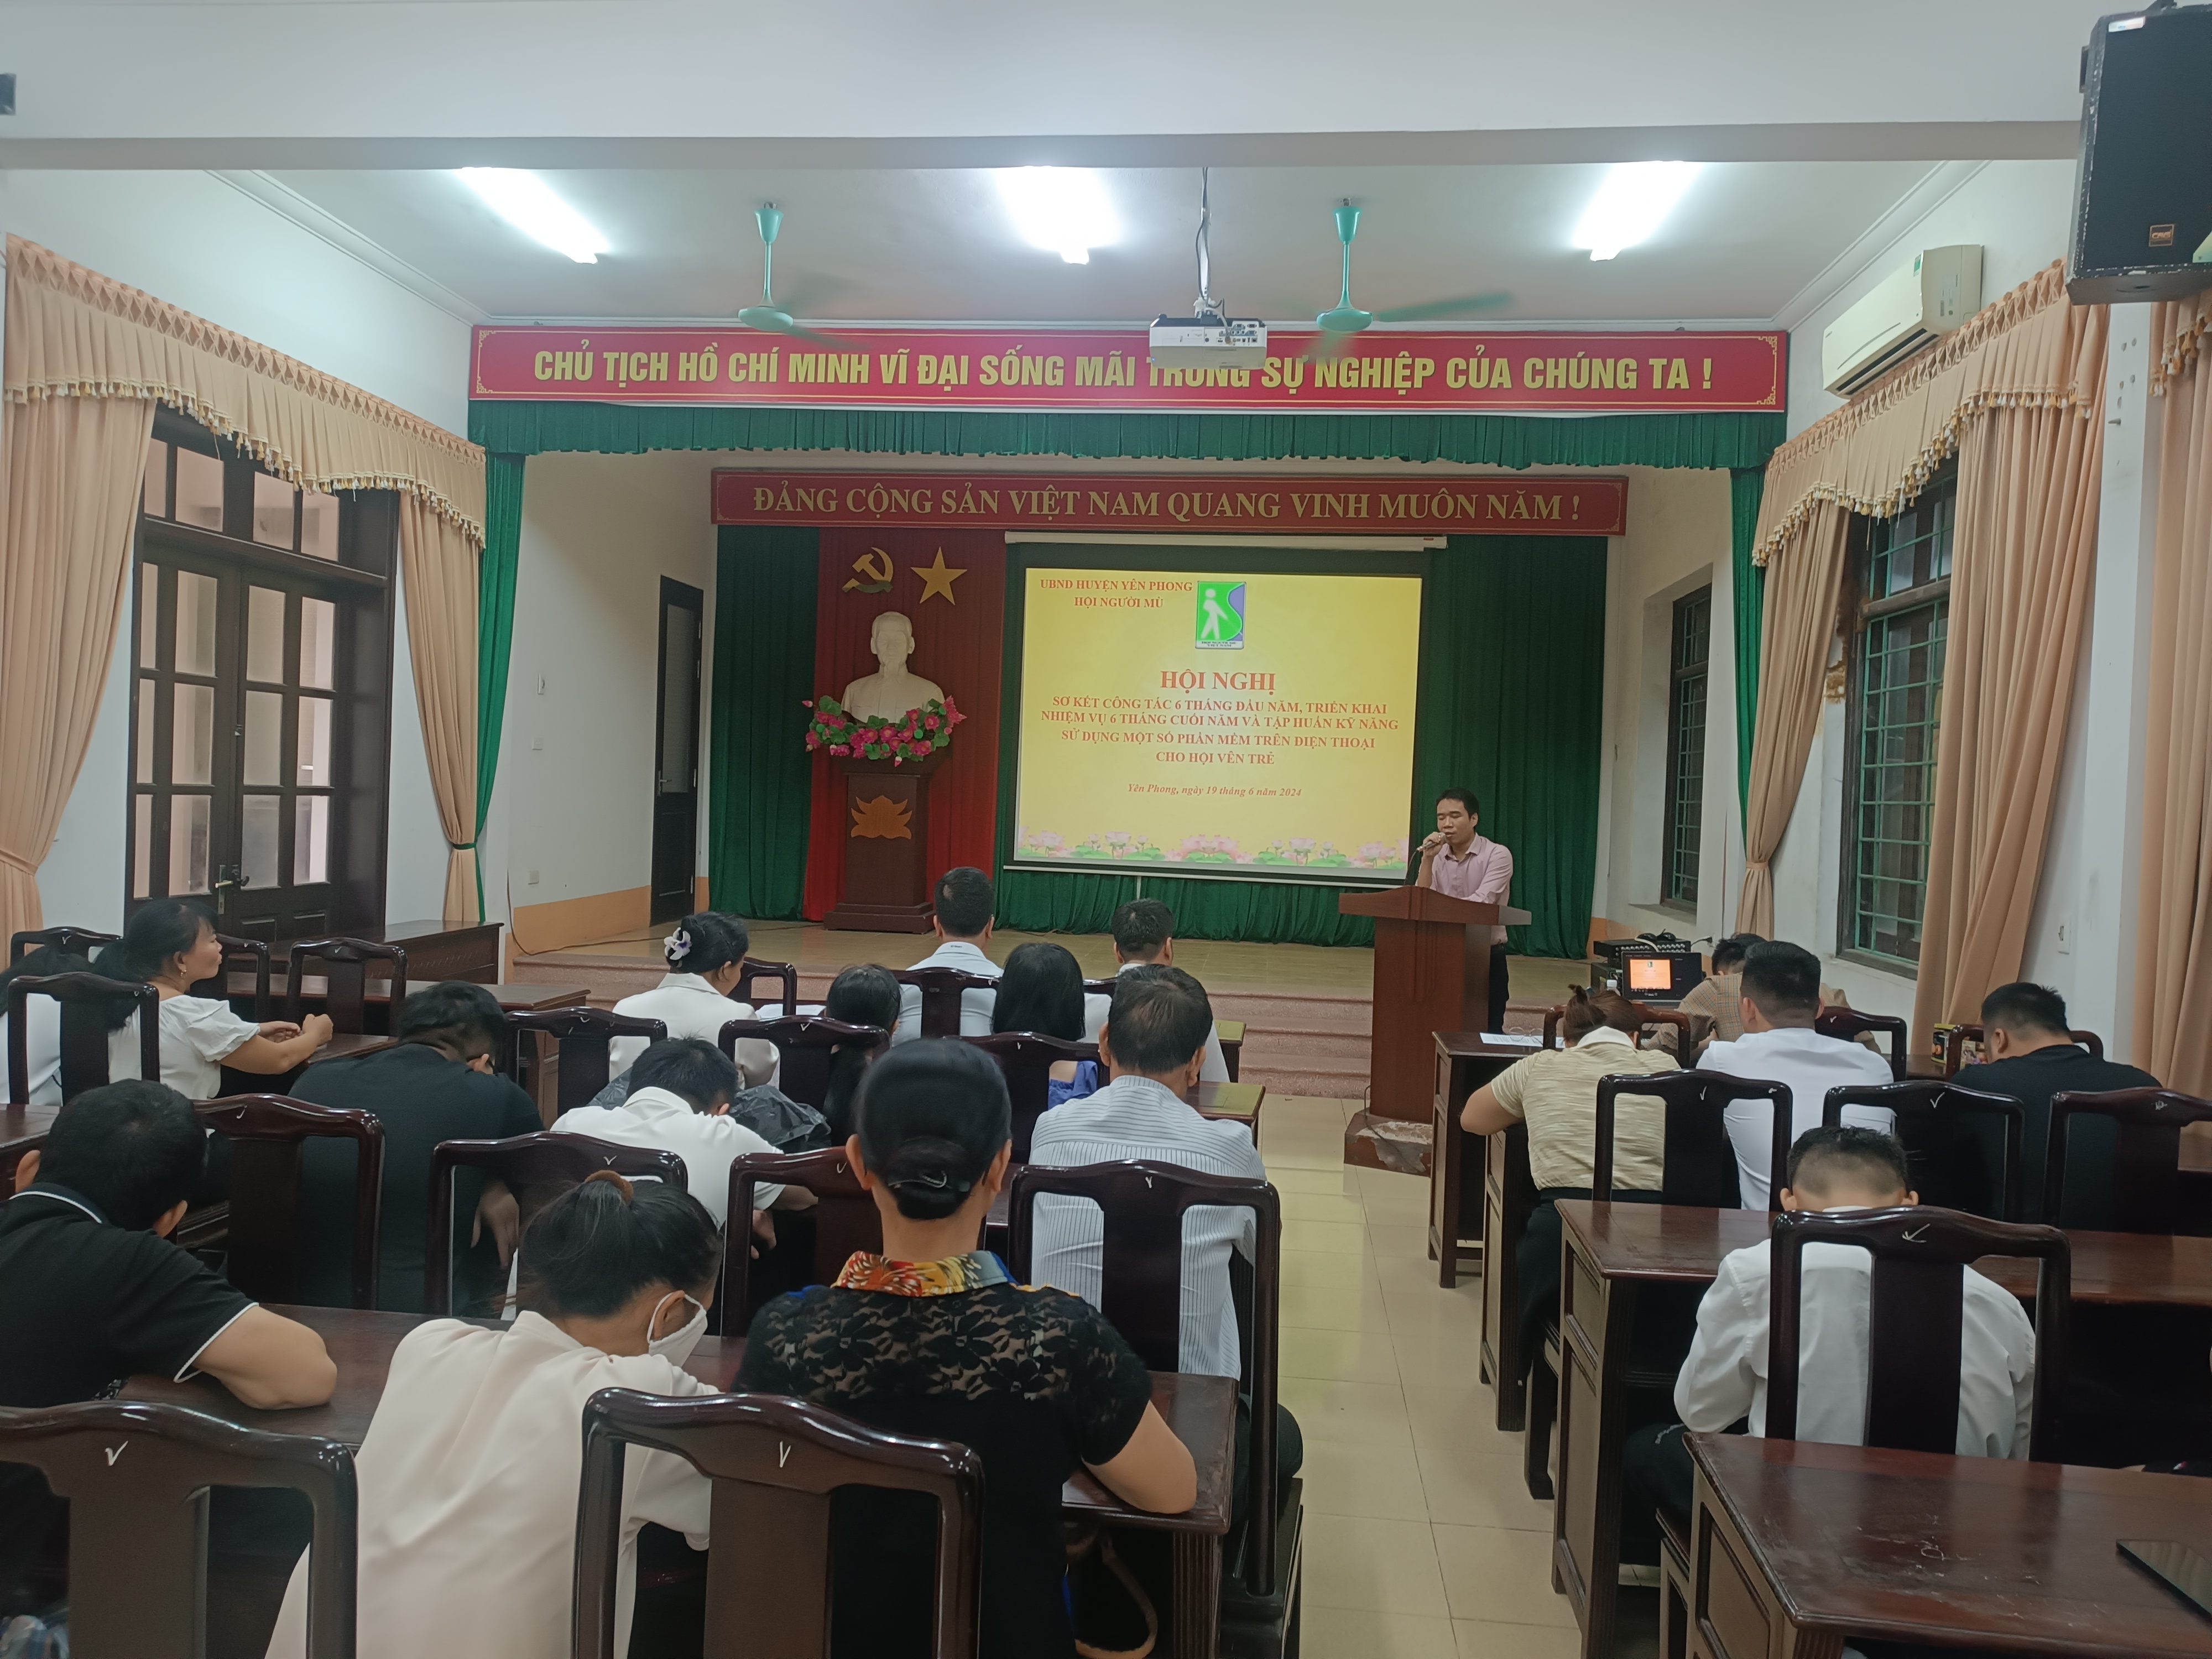 Huyện hội Yên Phong, Bắc Ninh sơ kết 6 tháng đầu năm và tập huấn sử dụng điện thoại thông minh 